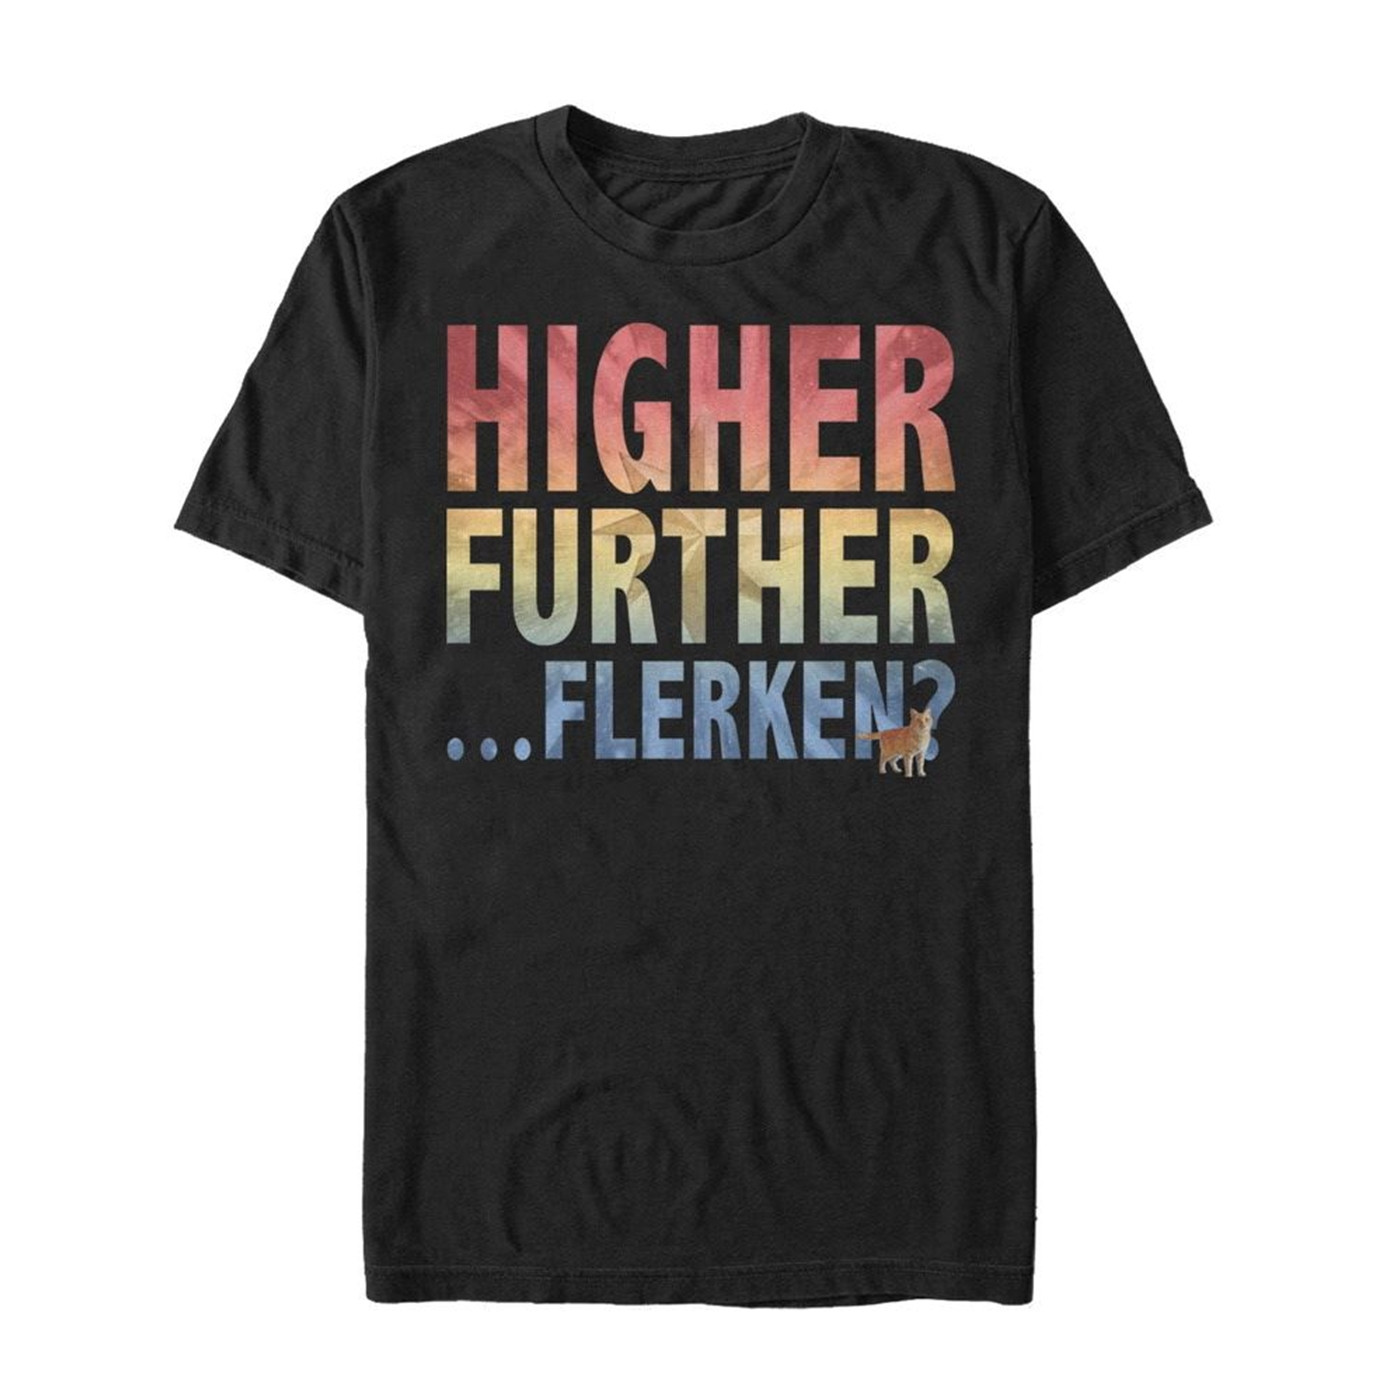 Higher Further Flerken Men's T-Shirt